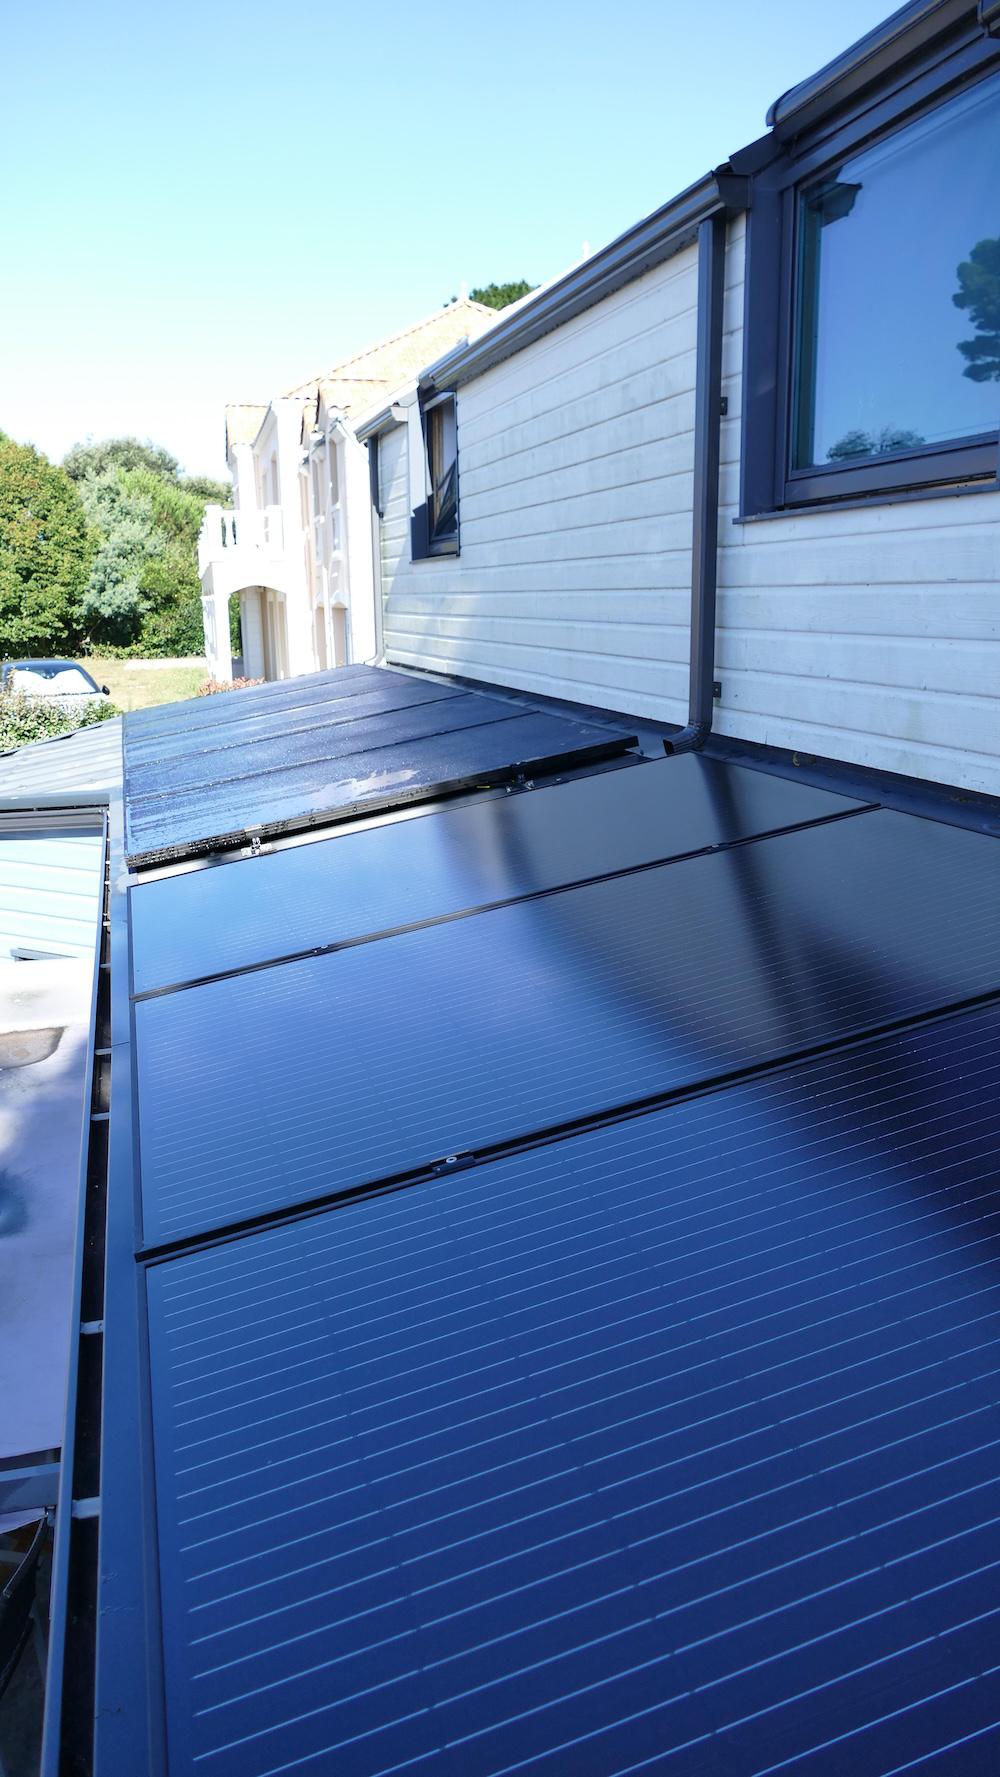 <span class="popup-mms-24">Installation de panneaux solaires sur toiture inclinée - 3200W</span>